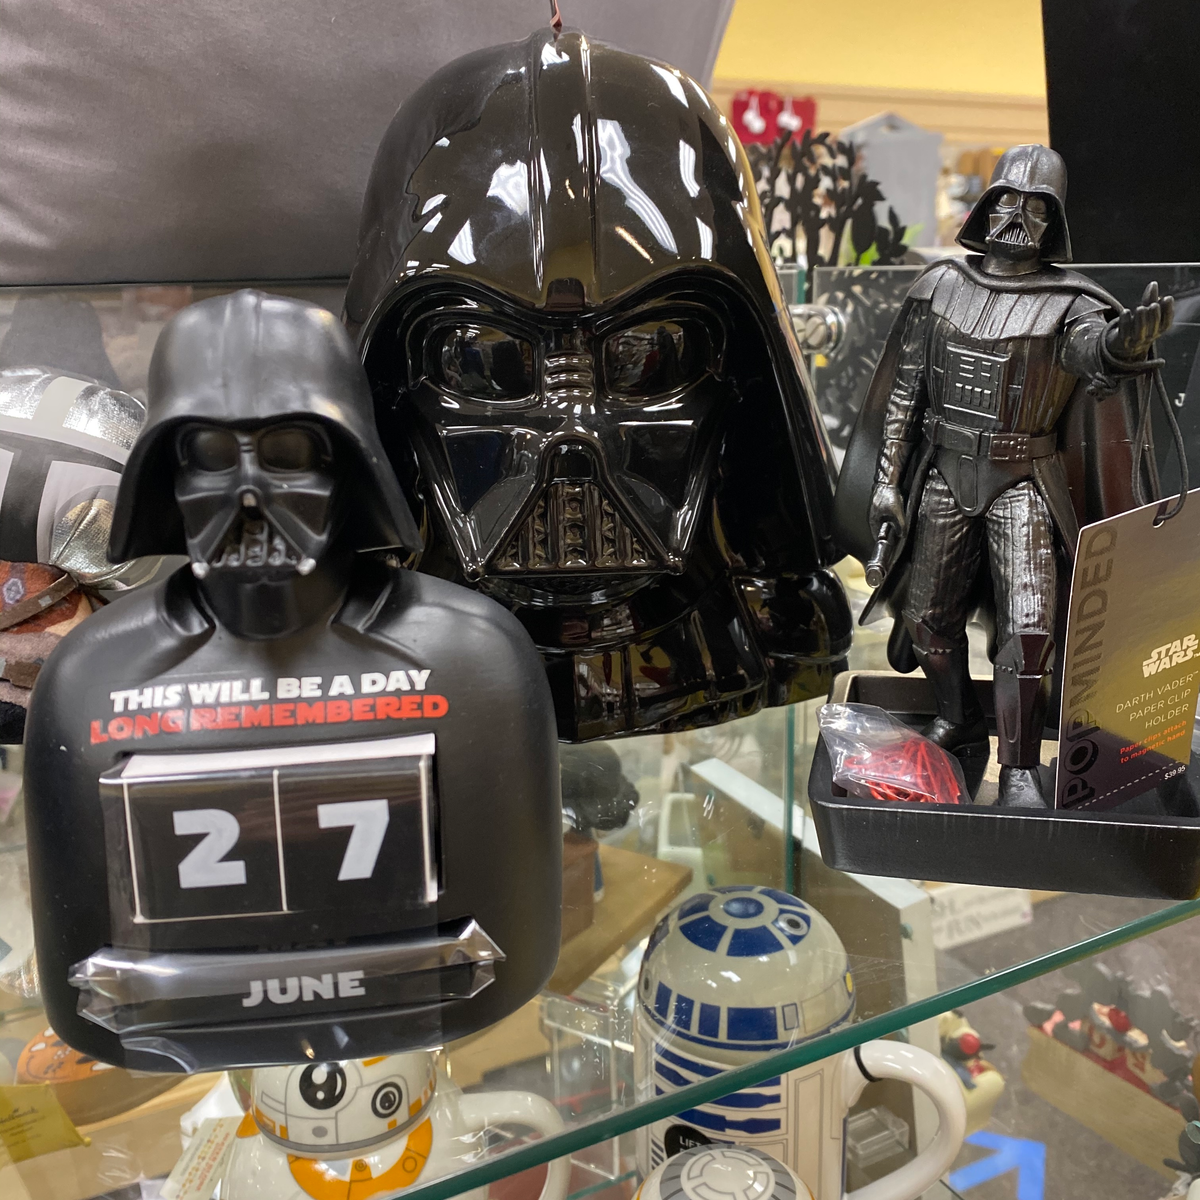 Star Wars Darth Vader Magnetic Paper Clip Holder